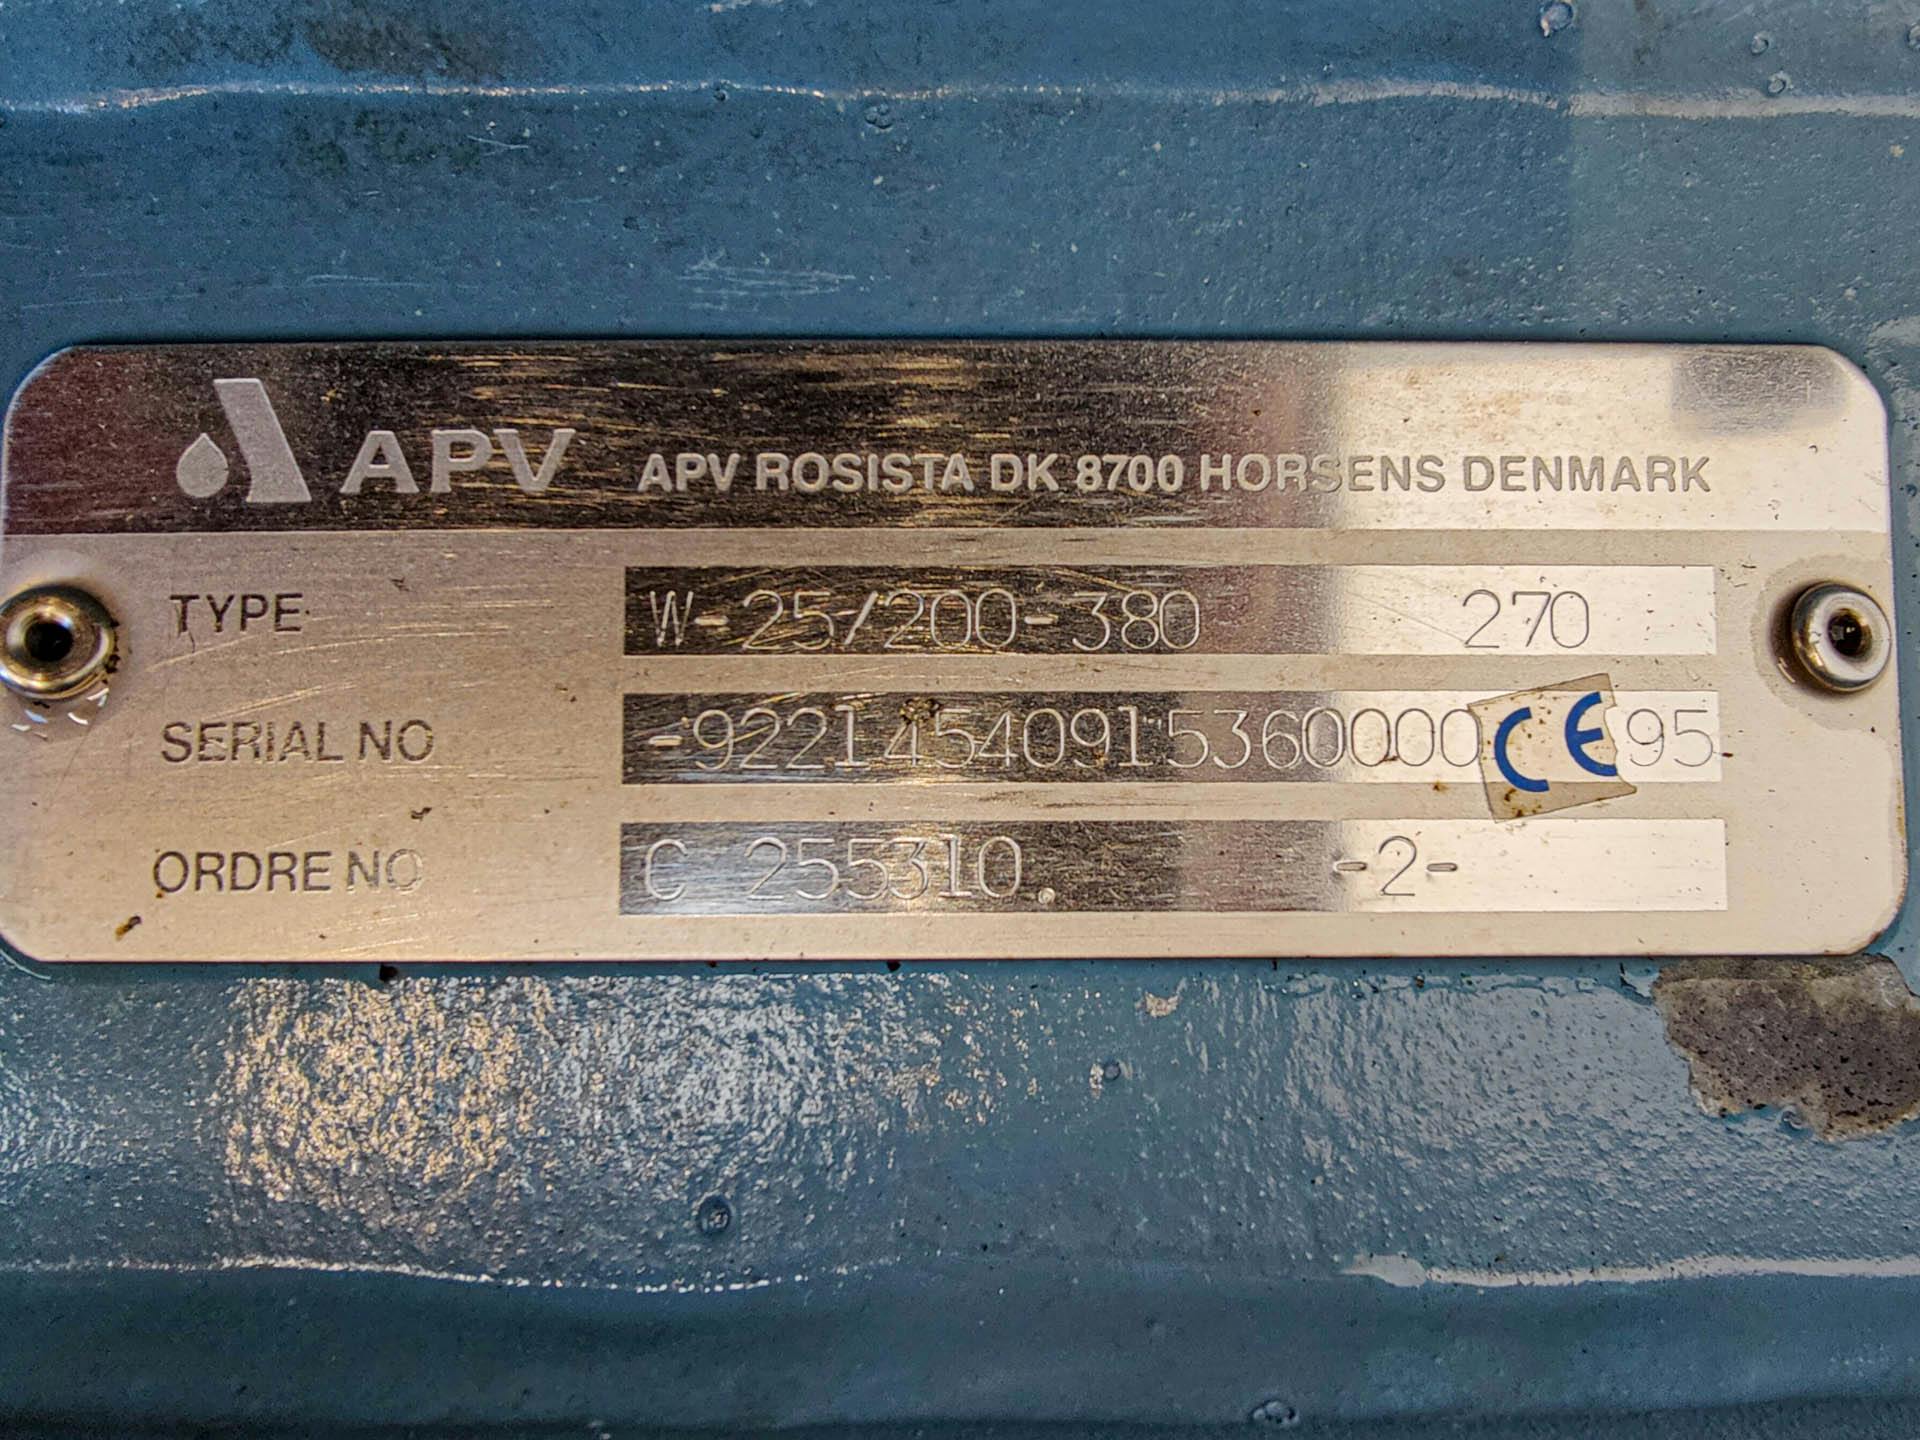 APV Rosista W-25/200-380 - Pompa centrifuga - image 5